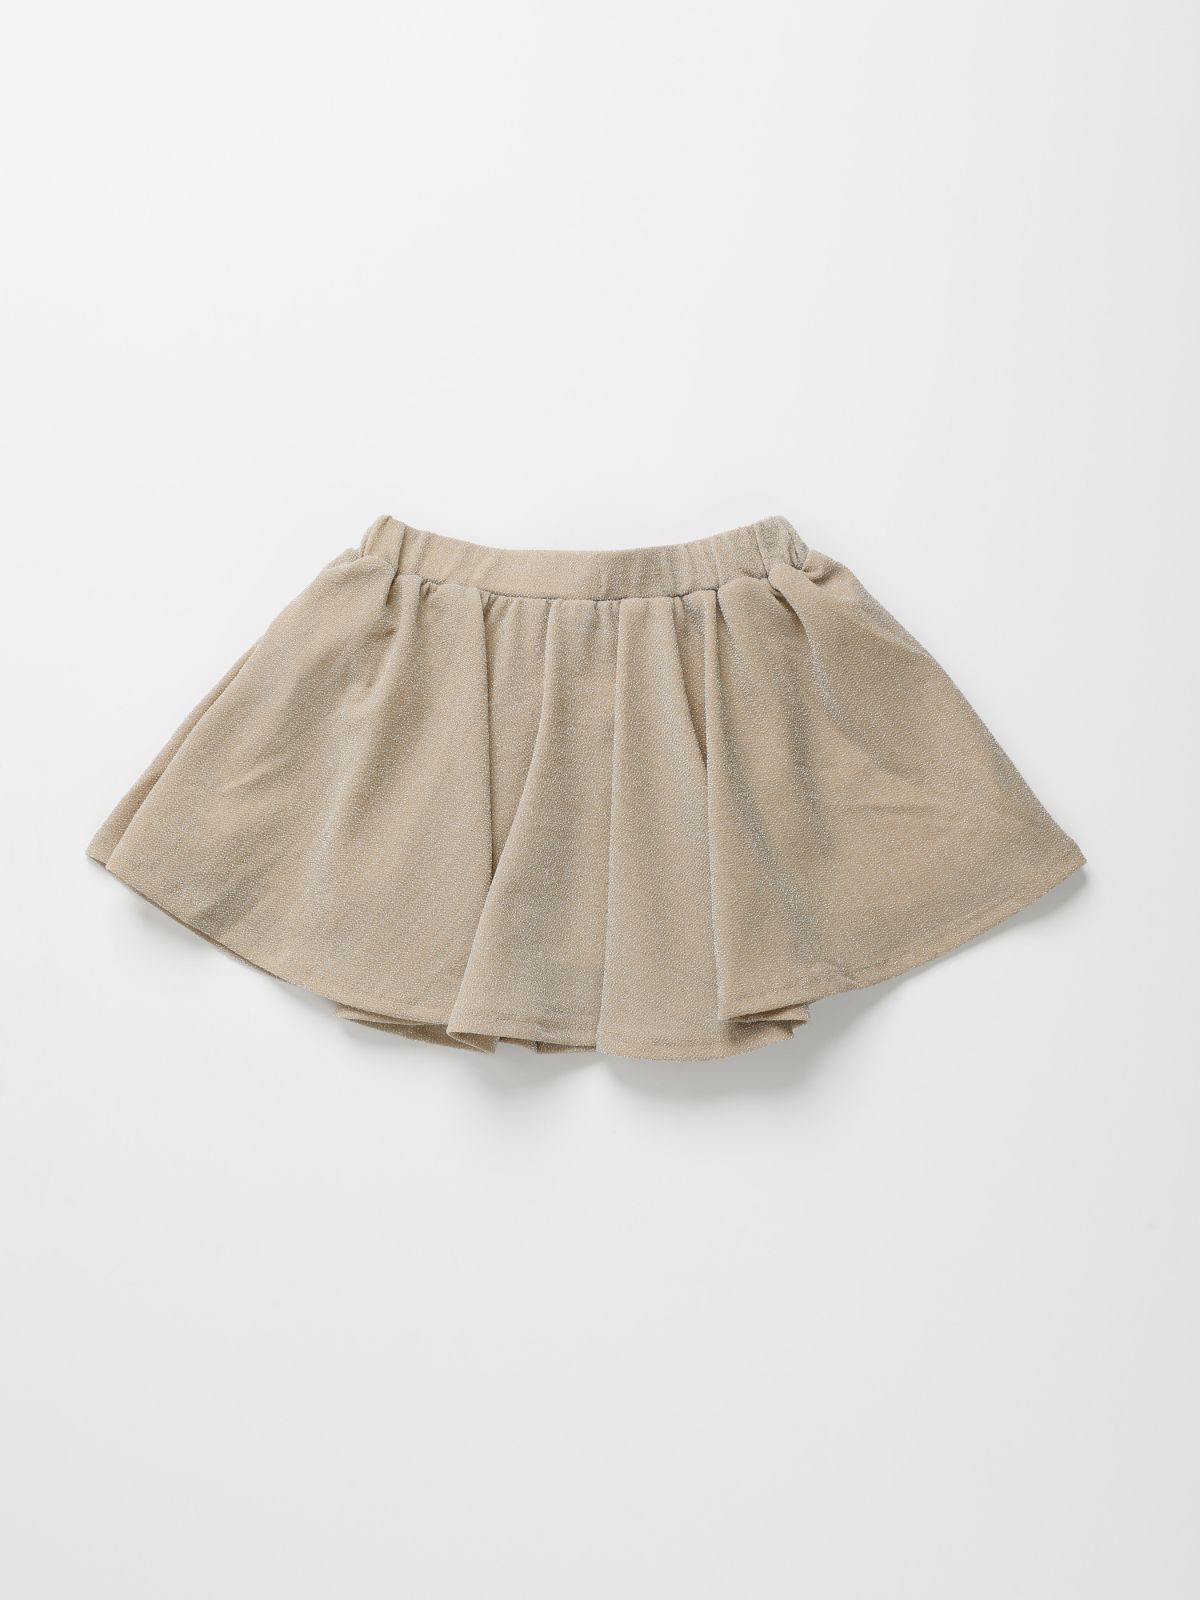  חצאית מיני לורקס / 2Y-6Y  של TERMINAL X KIDS